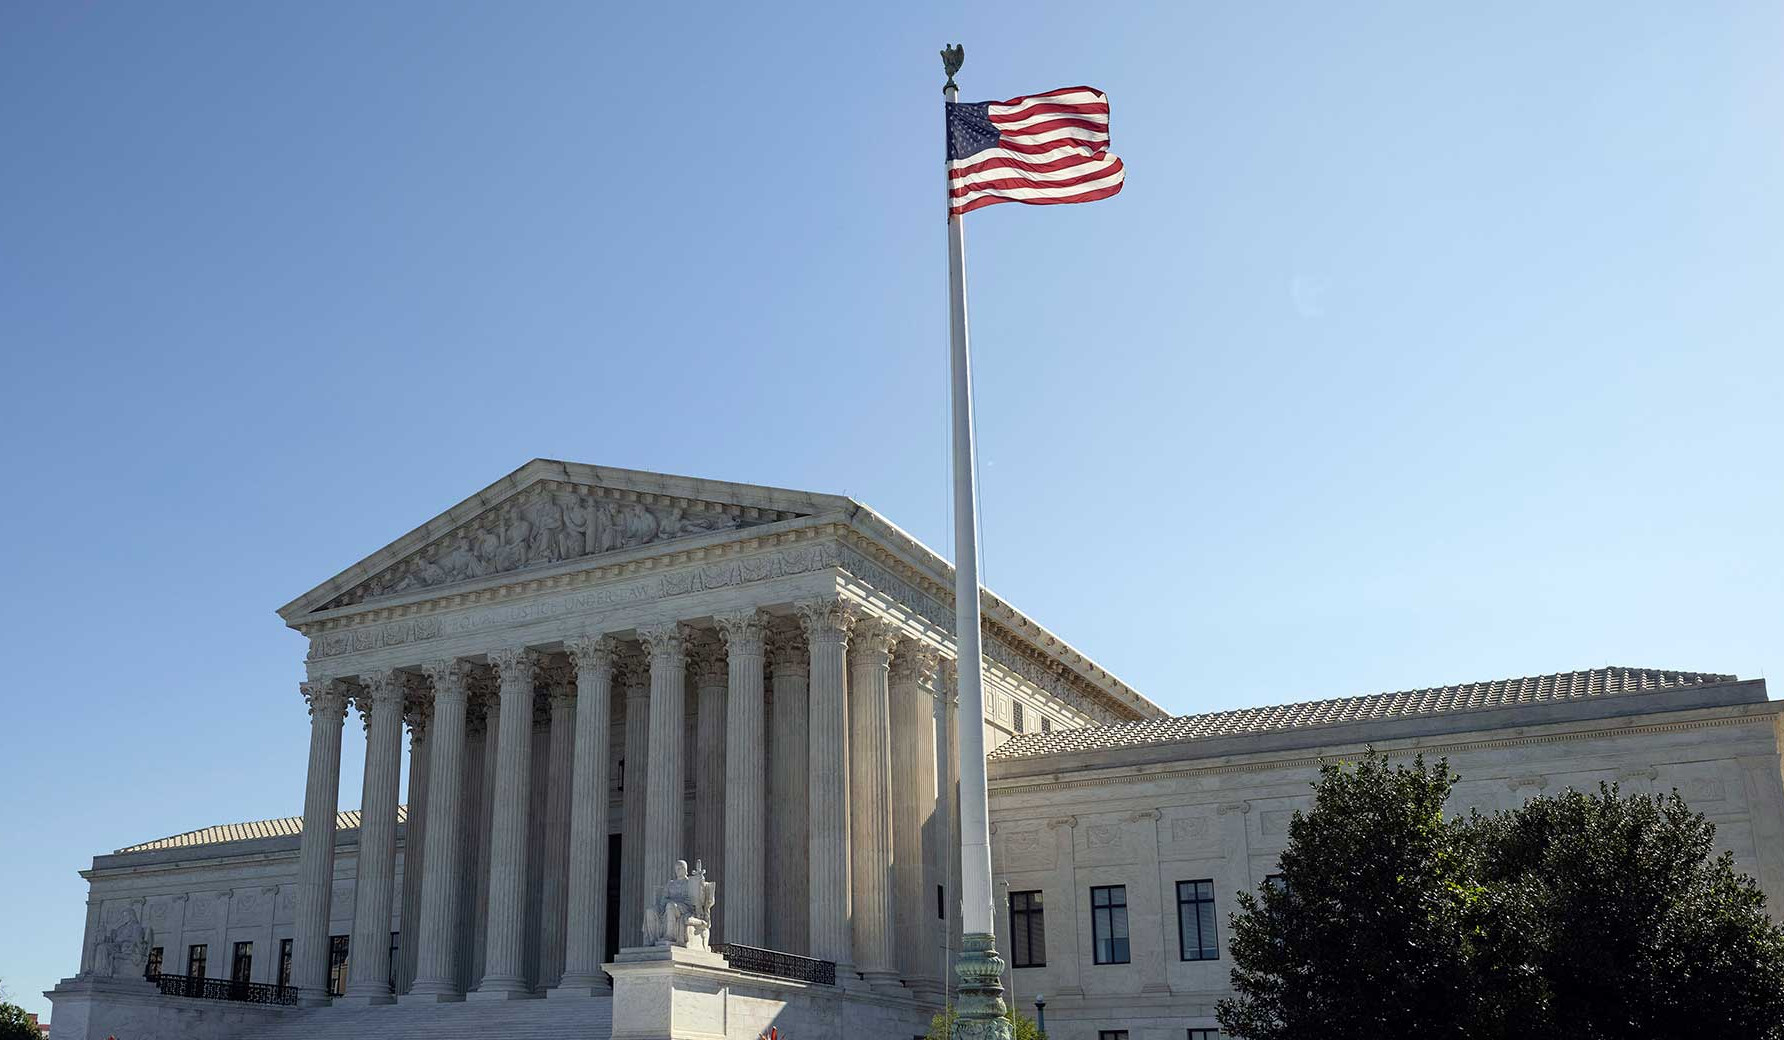 ԱՄՆ Գերագույն դատարանը մերժել է Թուրքիայի դեմ դատական գործընթացները դադարեցնելու՝ Անկարայի դիմումը